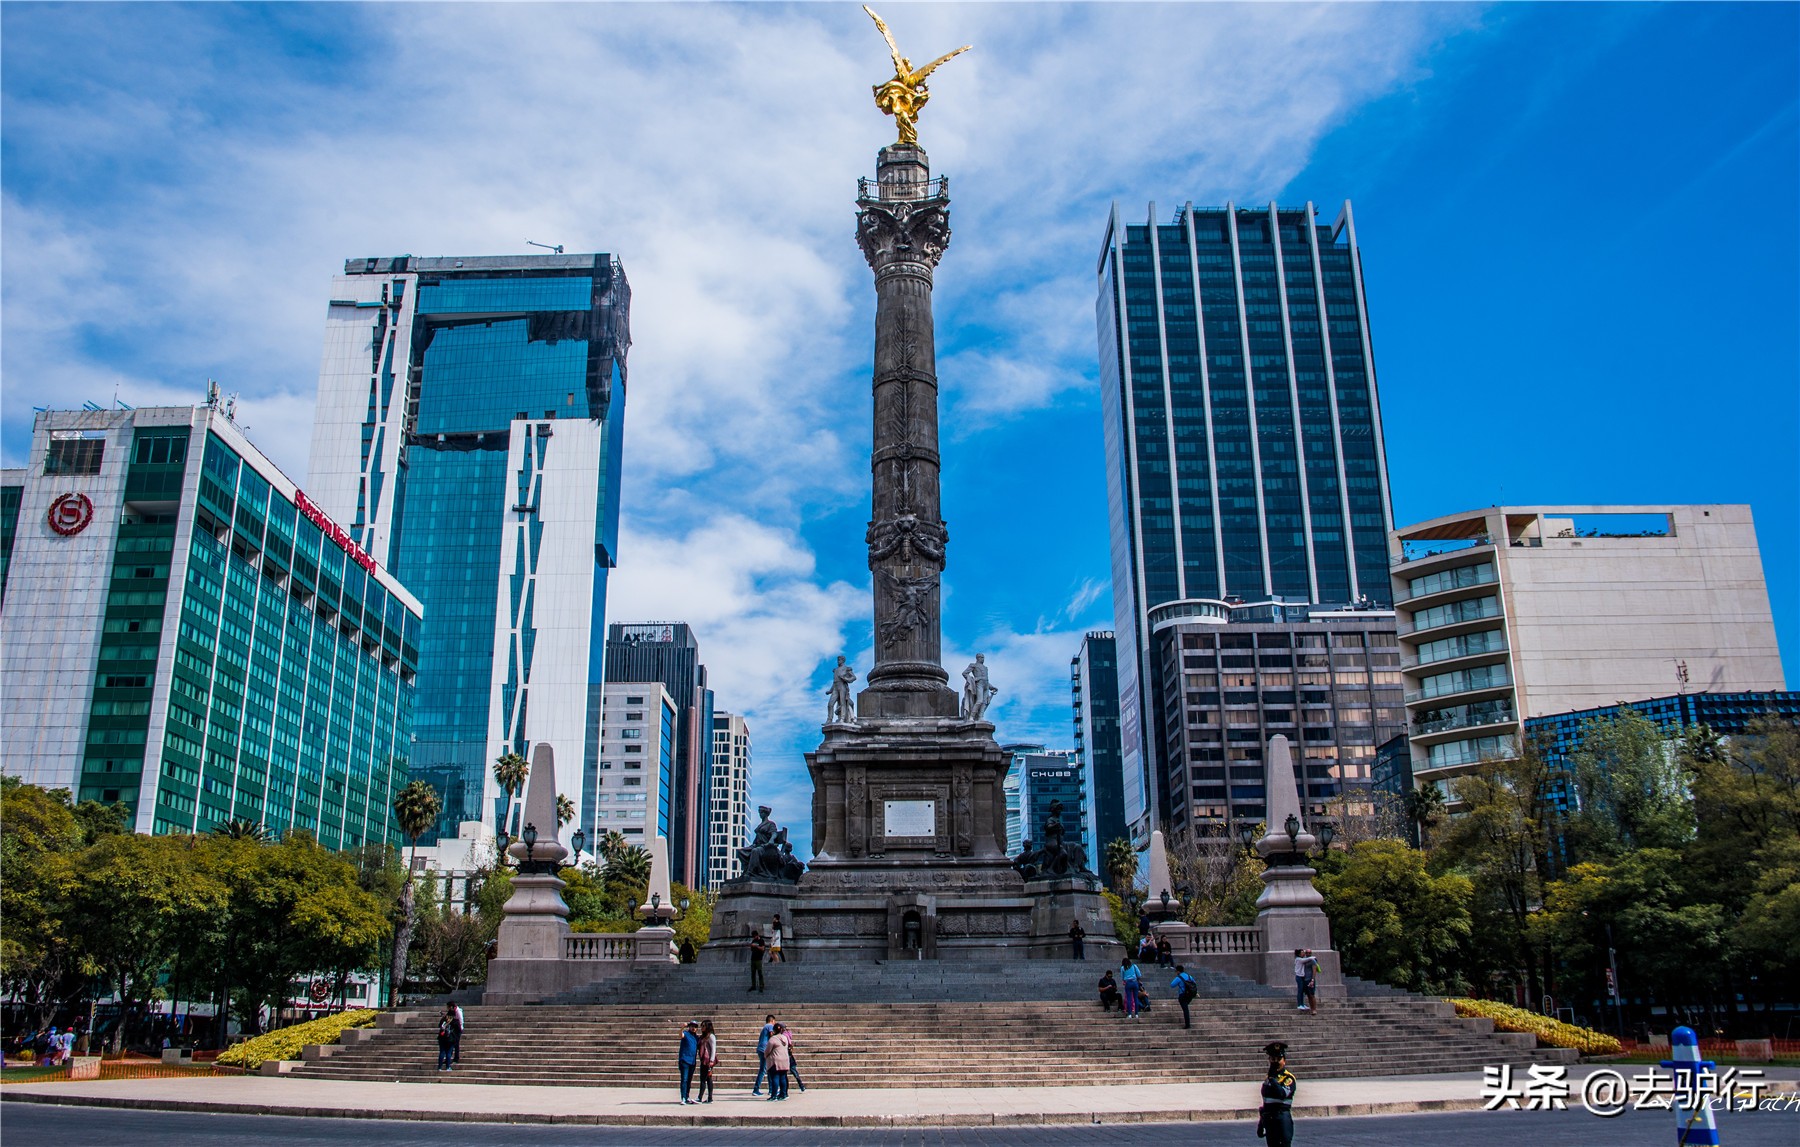 你印象中的墨西哥首都是座怎样的城市?落后,古老,还是现代化?